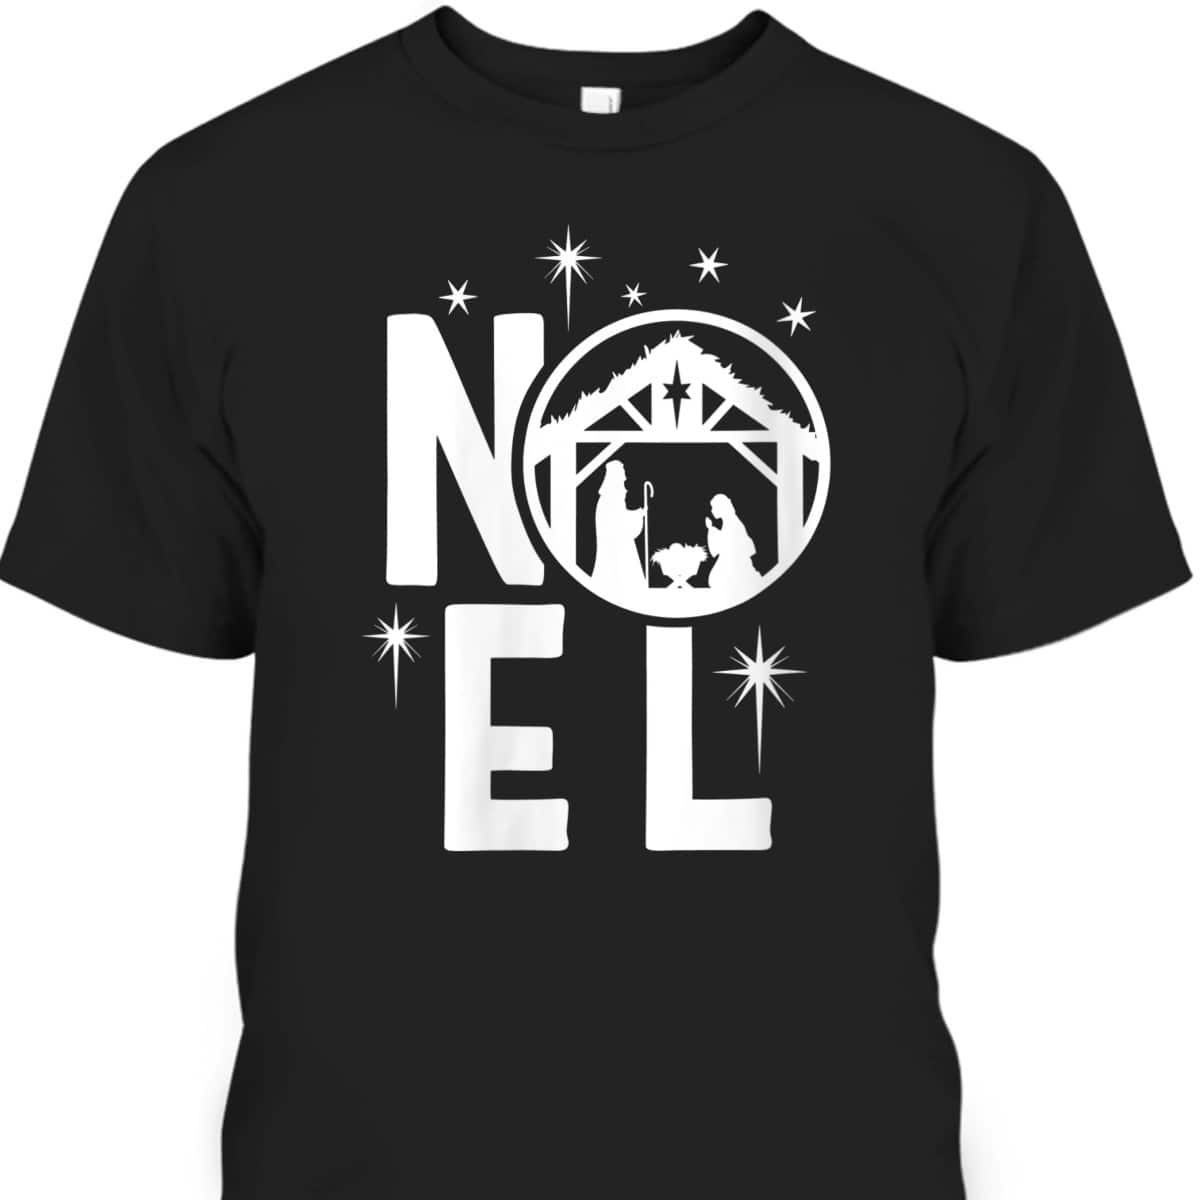 Noel Manger Religious Christmas Nativity Christian T-Shirt